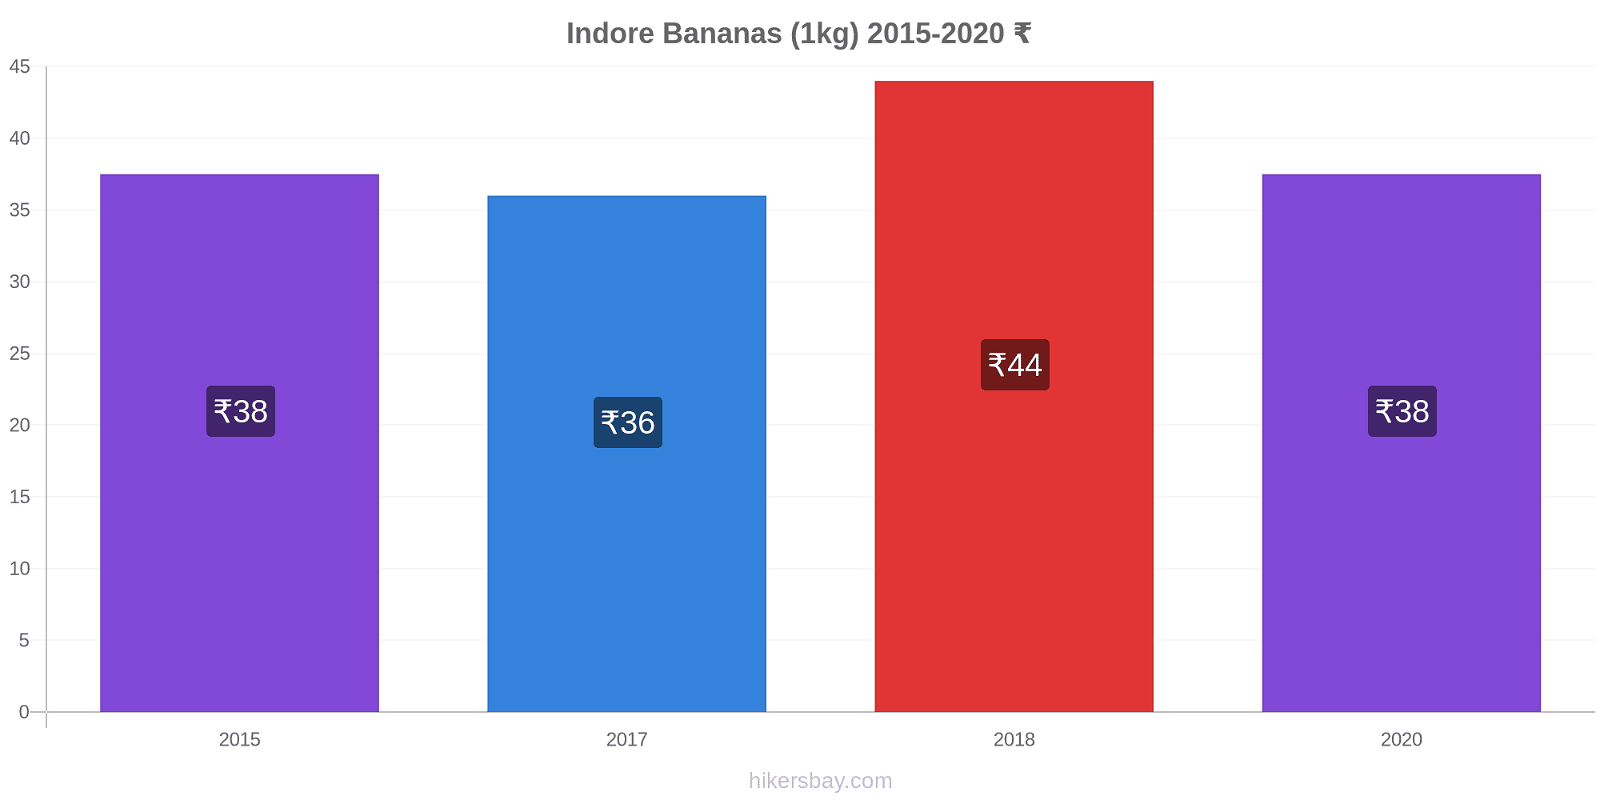 Indore price changes Bananas (1kg) hikersbay.com